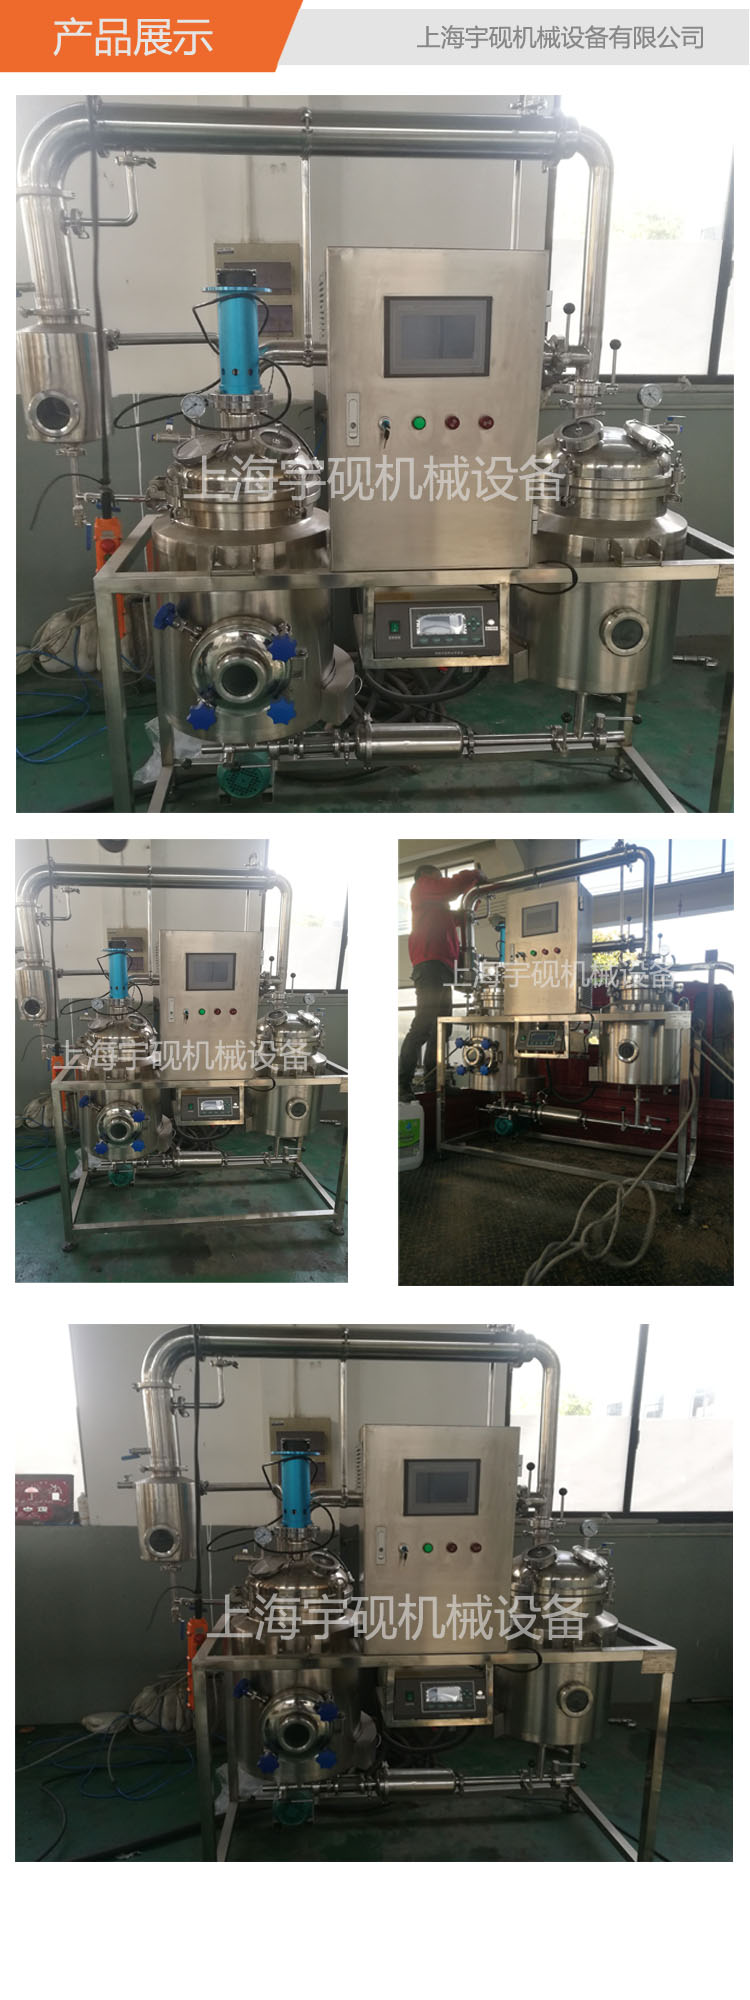 上海生产厂家直销不锈钢多功能提取浓缩设备 中药提取浓缩设备